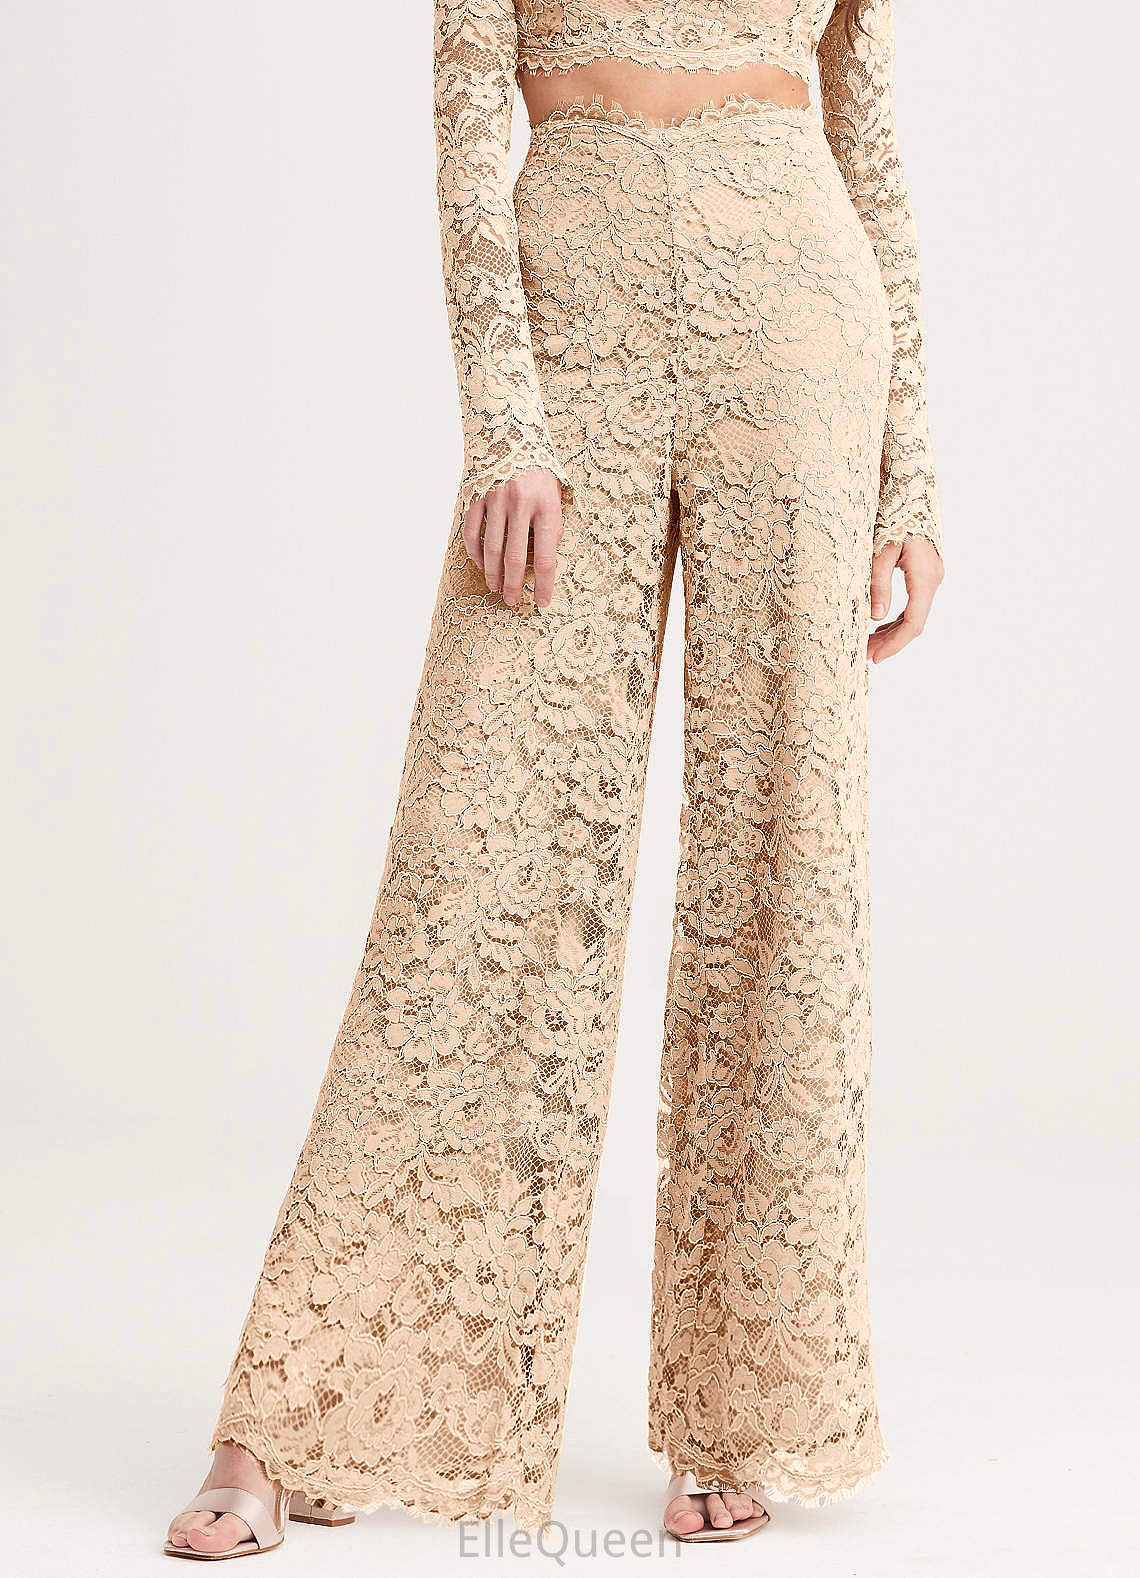 Leslie A-Line/Princess V-Neck Sleeveless Floor Length Natural Waist Bridesmaid Dresses